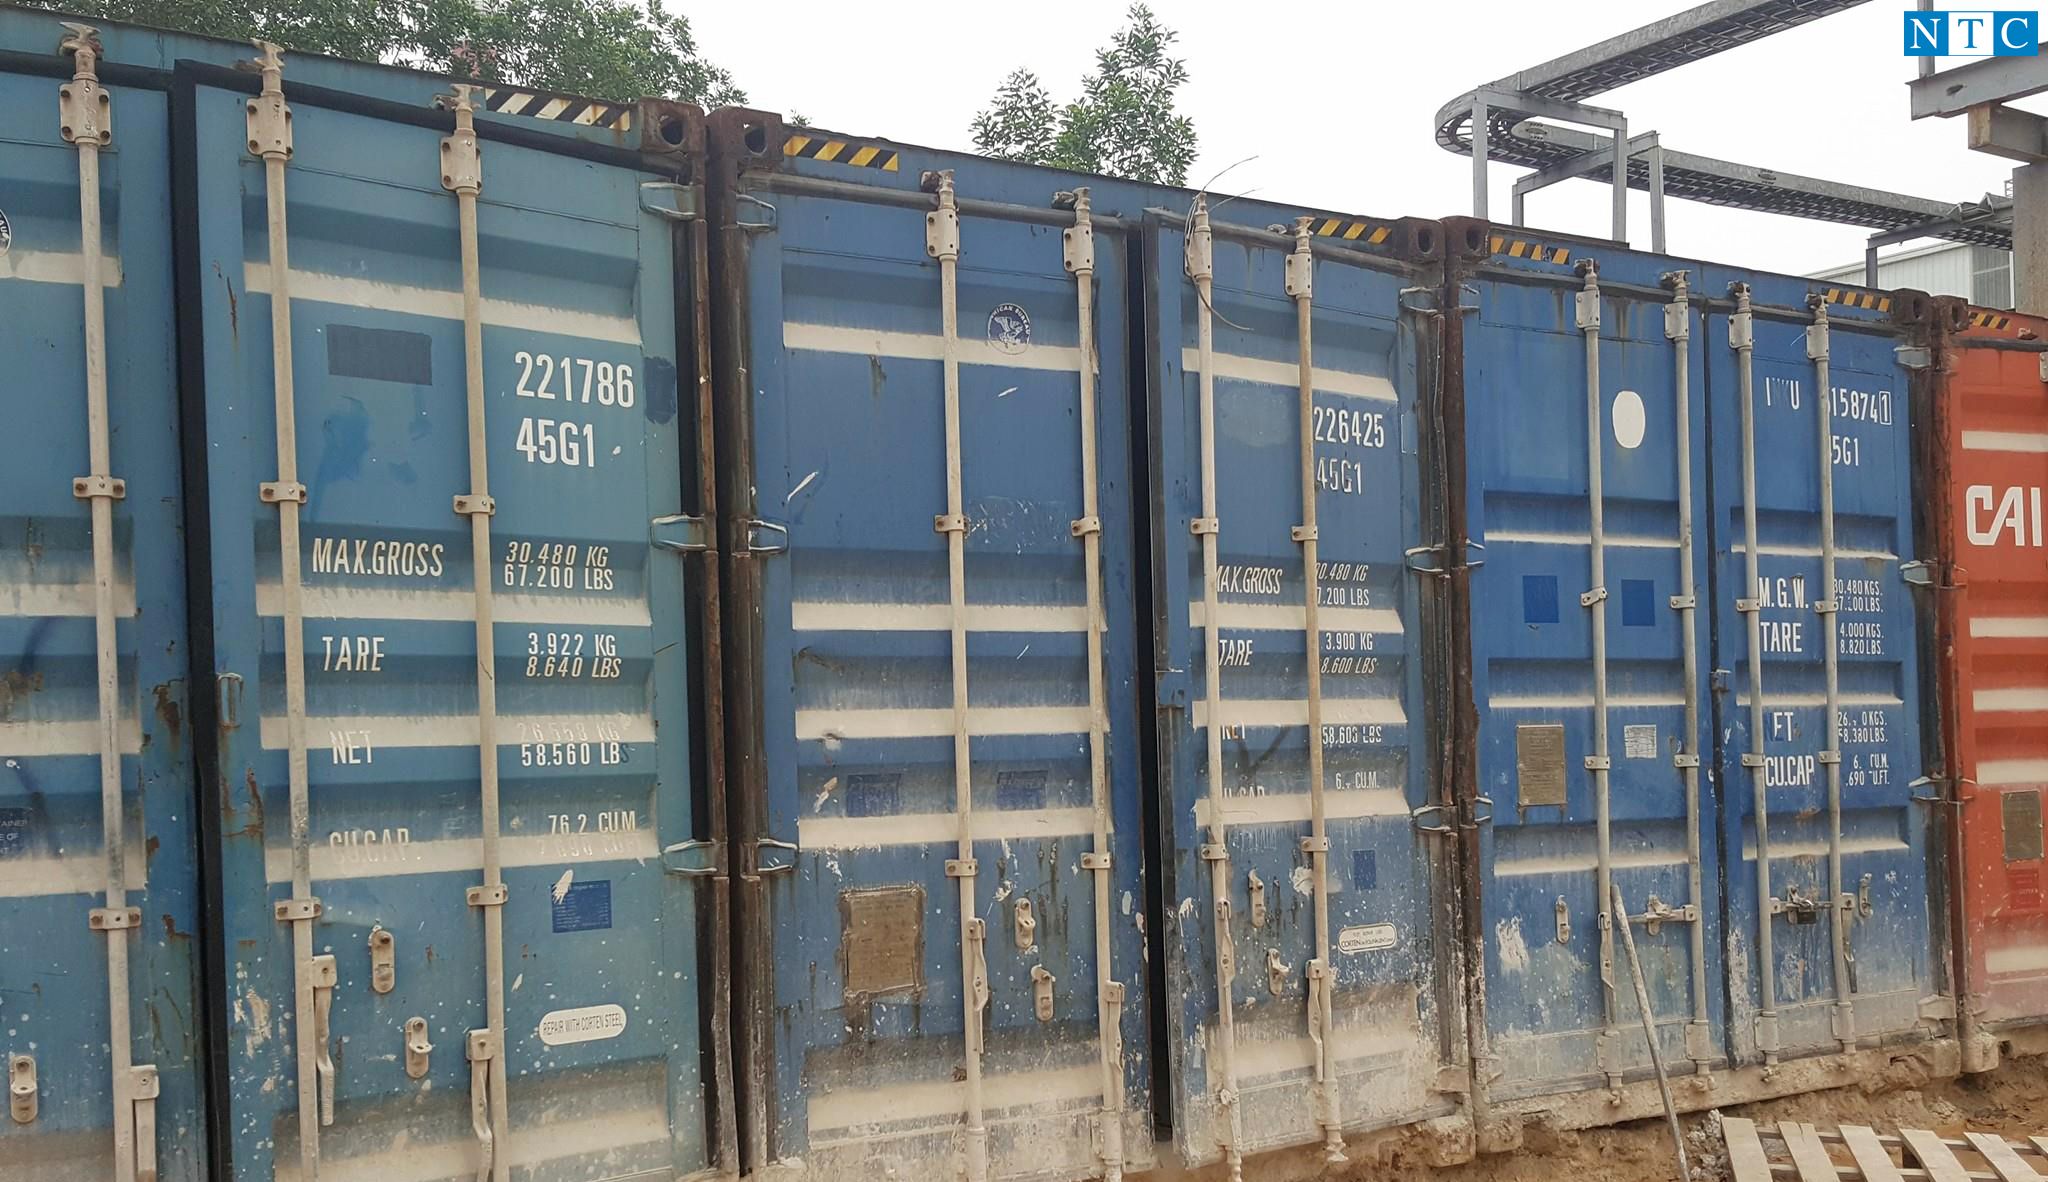 Giá thuê container kho của NTC Container tại Bắc Ninh là bao nhiêu?